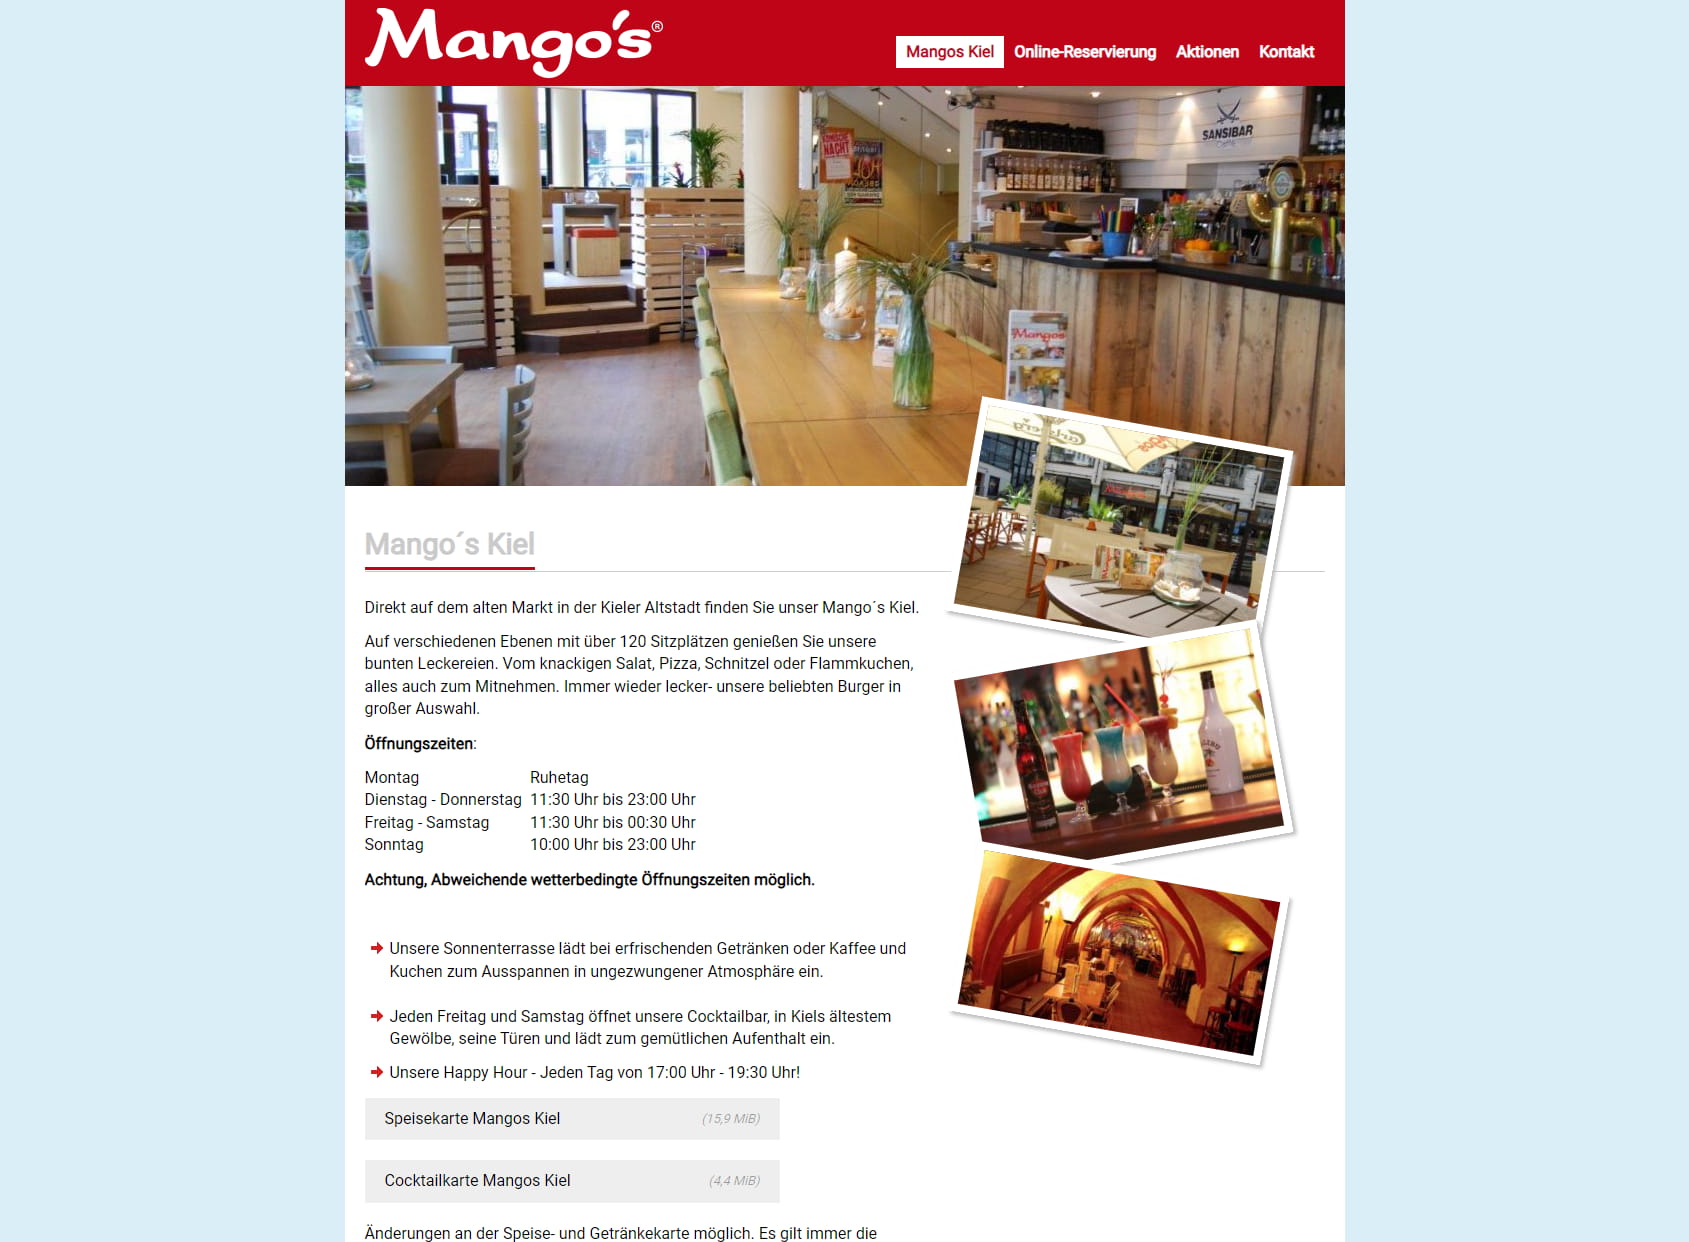 Mango's Kiel